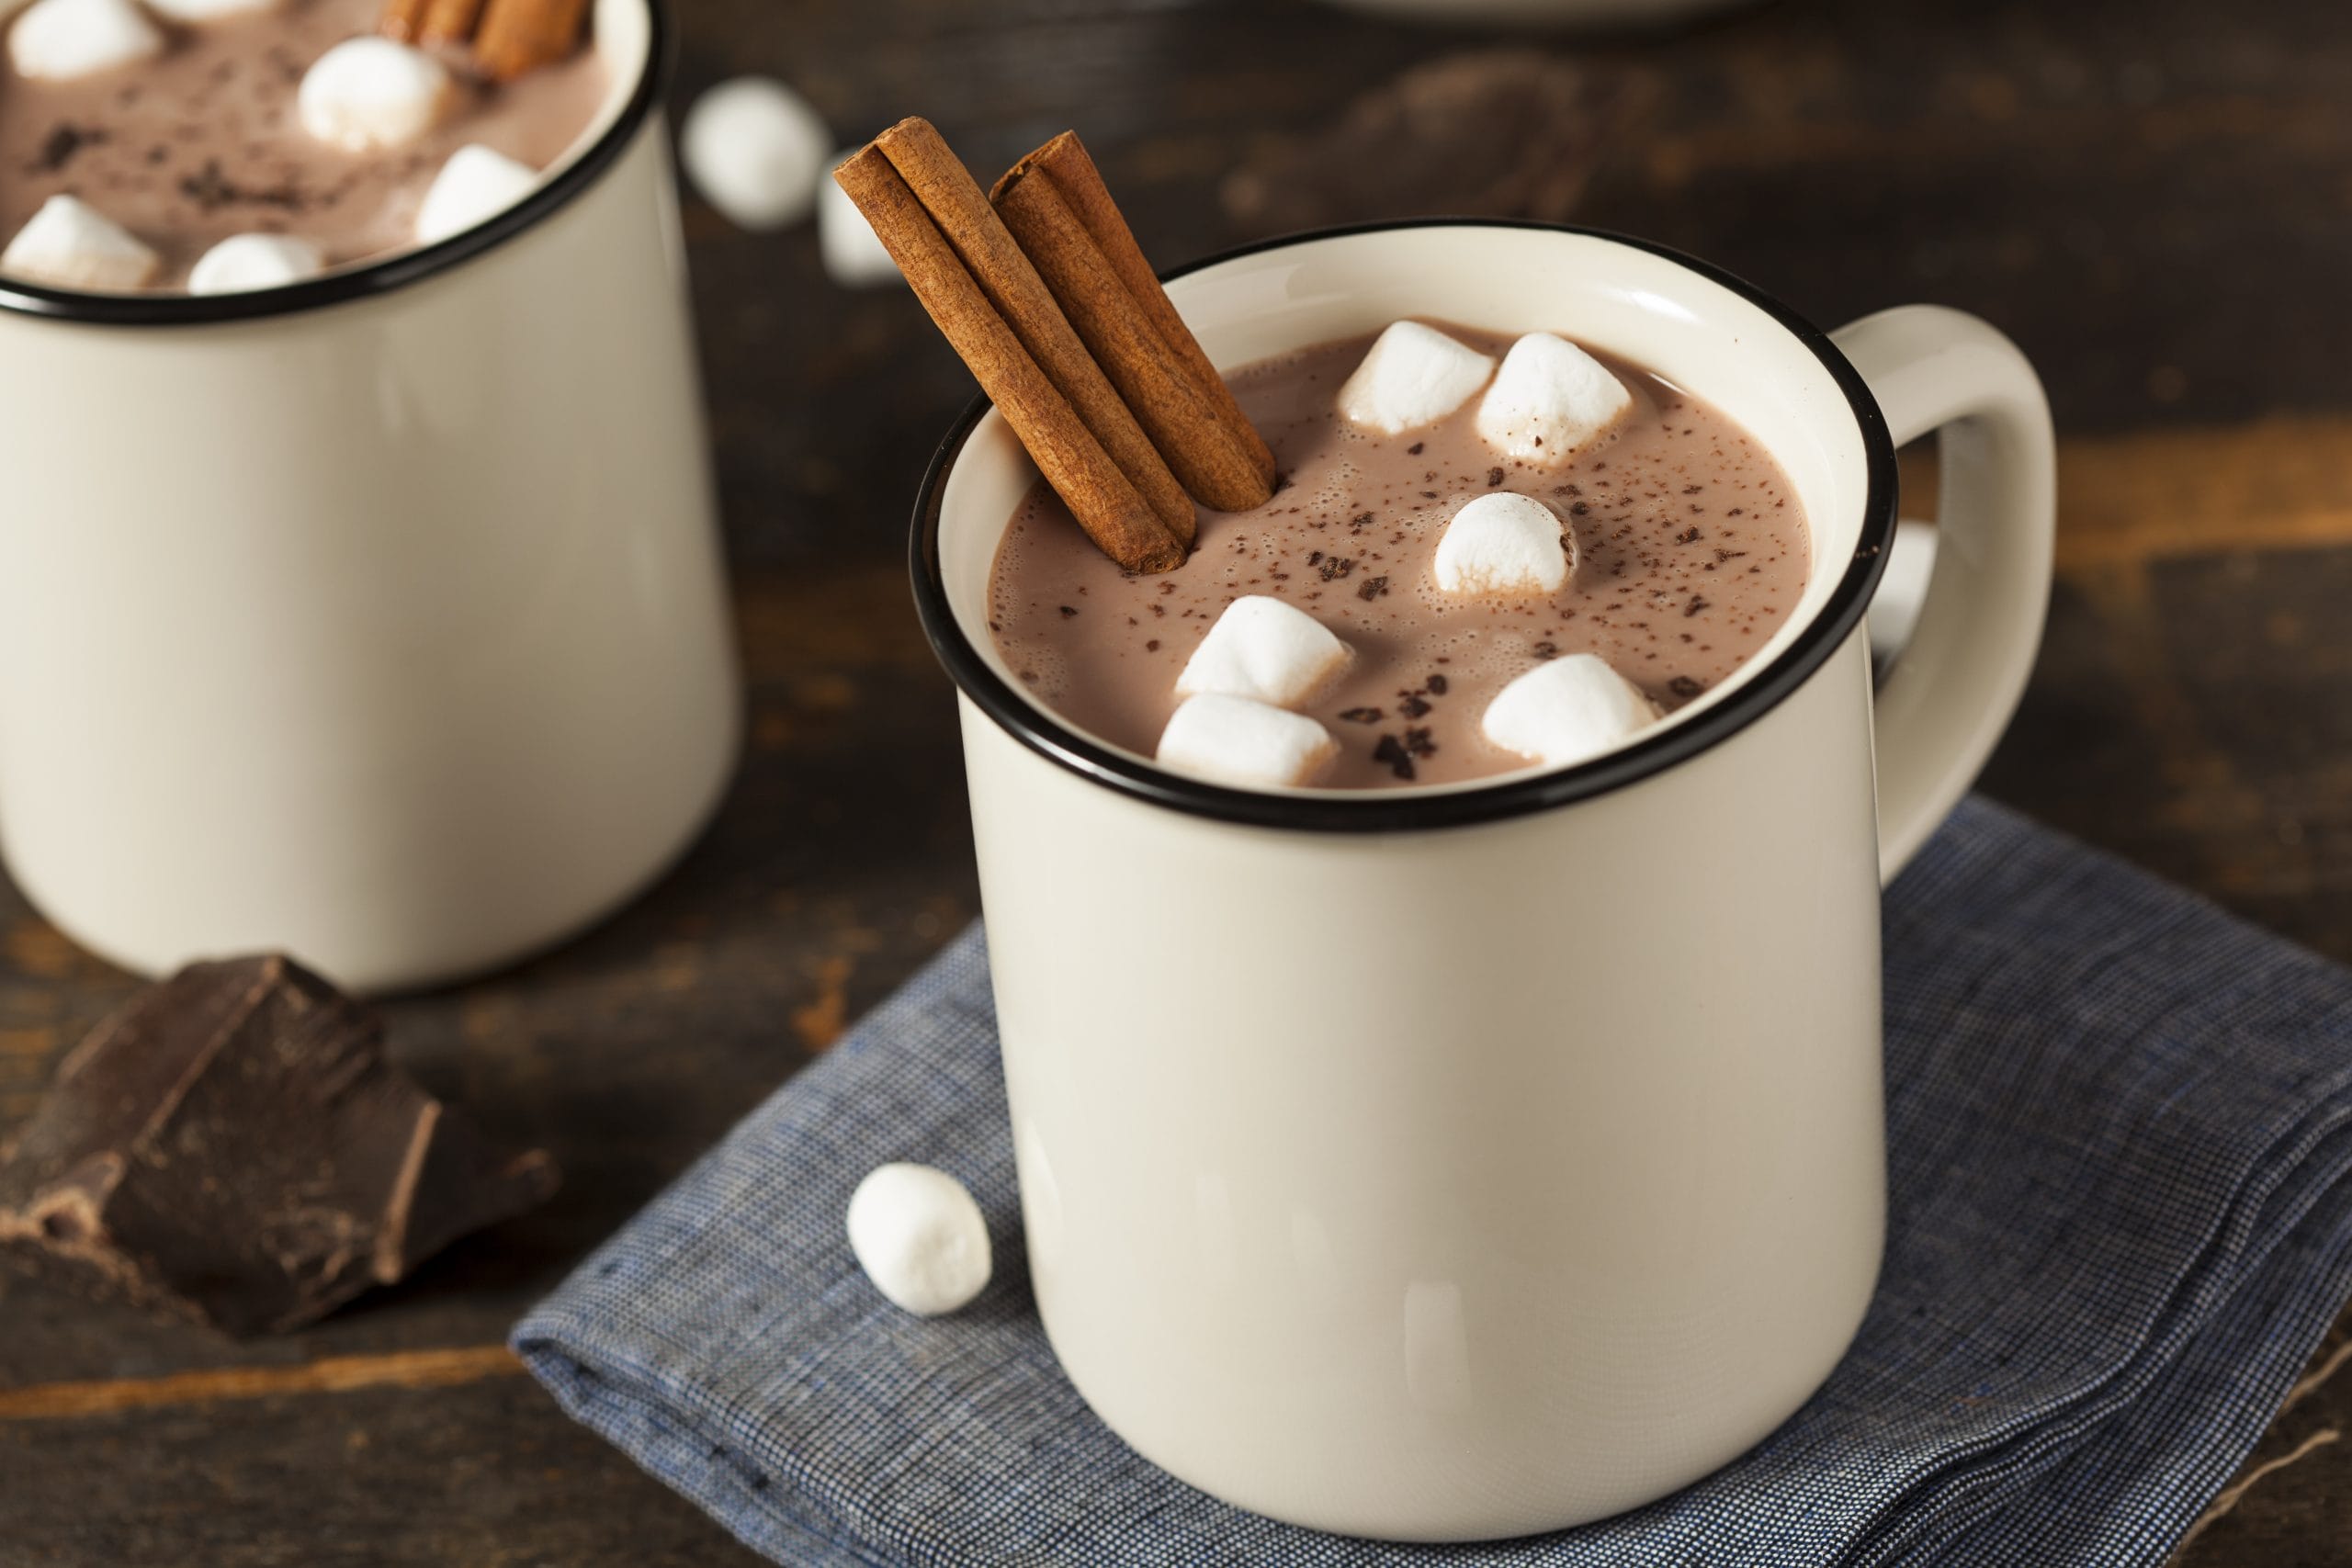 Period: A cup of CBD hot chocolate